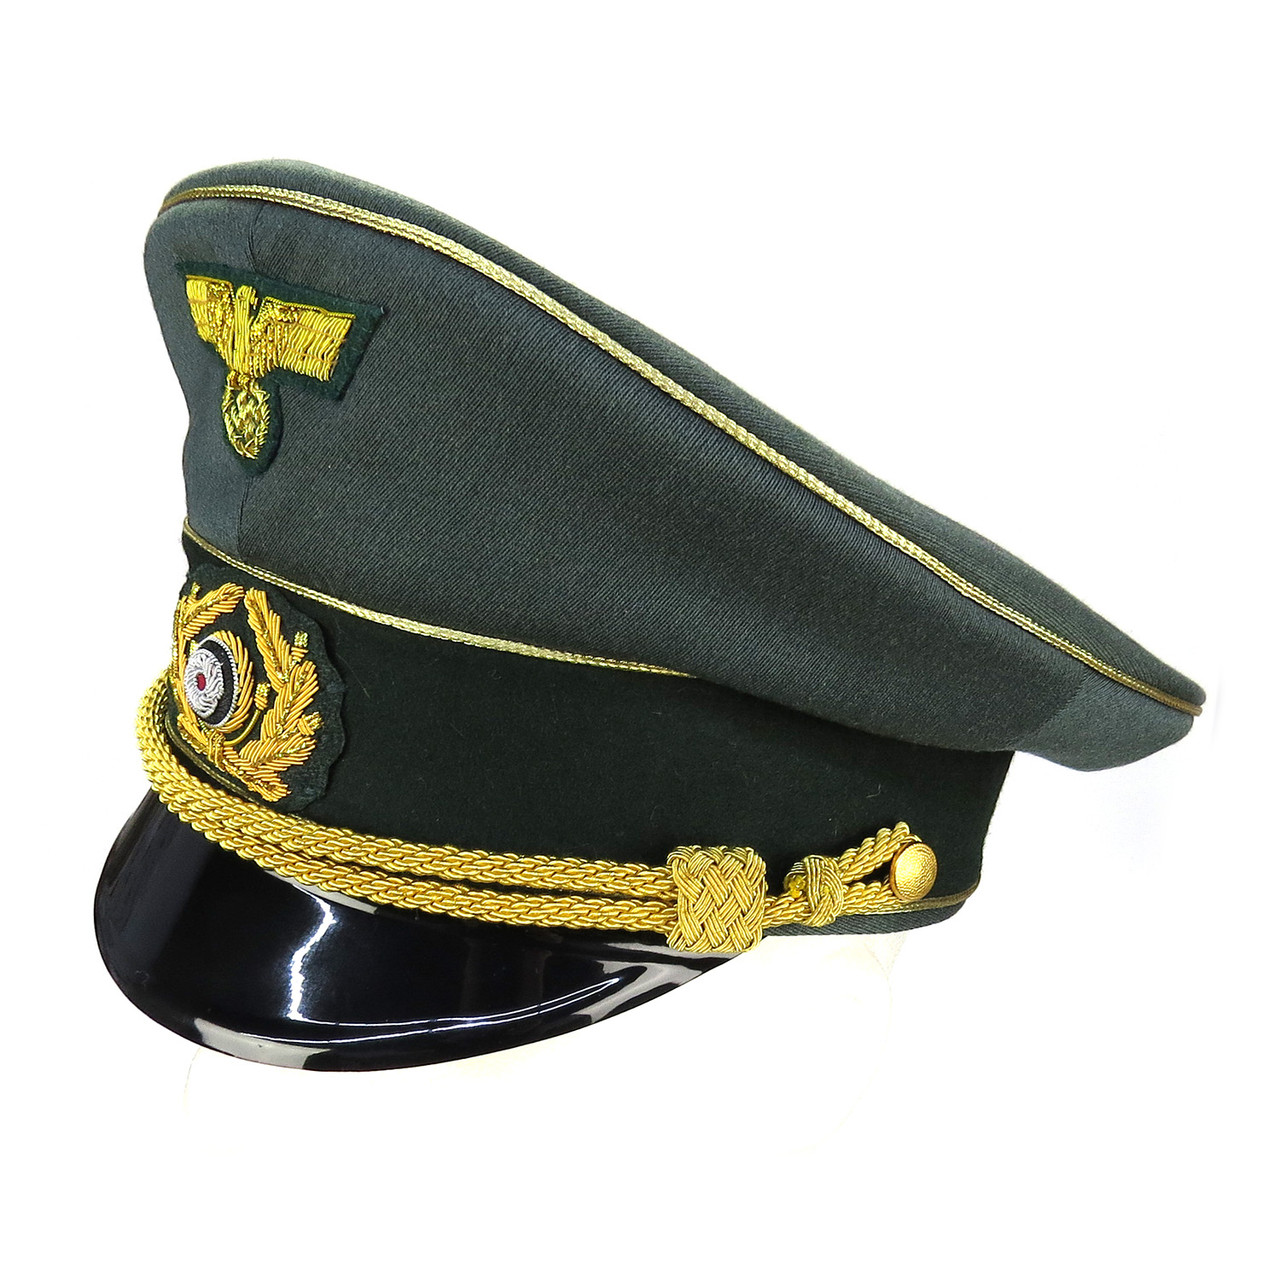 Wehrmacht General Officer Visor Cap (Erel) - Size 58